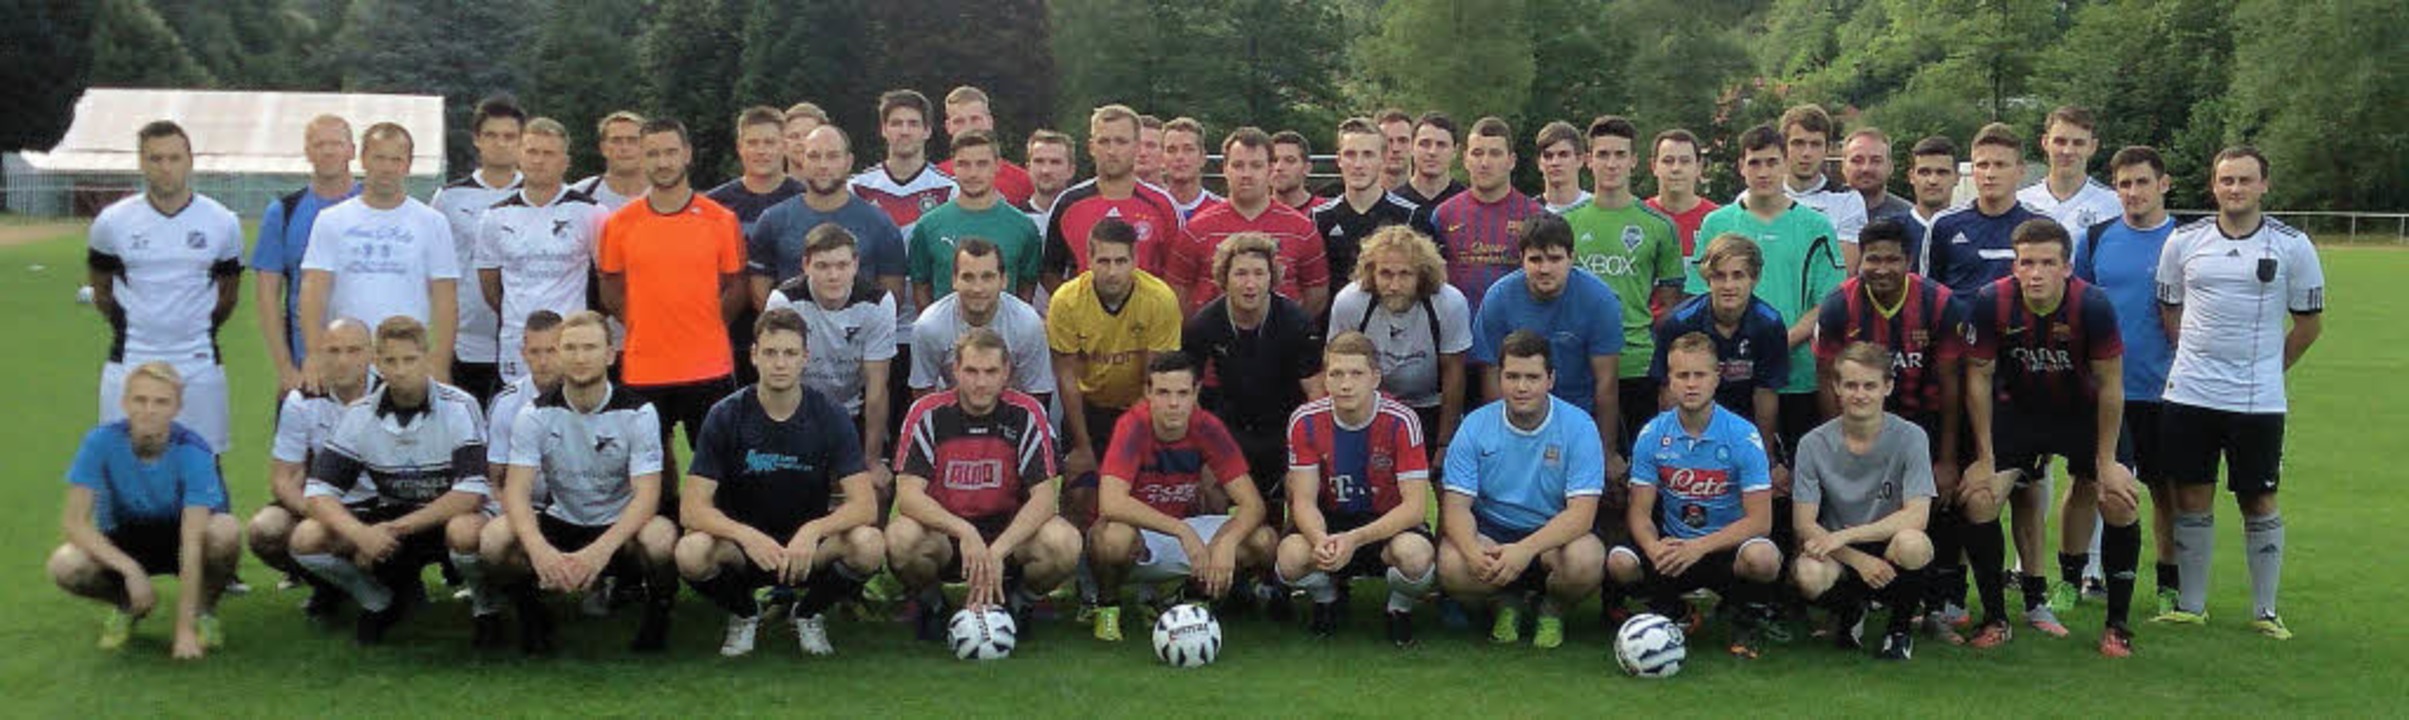 Ein historisches Bild für FC und Sport...pielgemeinschaft beim ersten Training.  | Foto: Verein